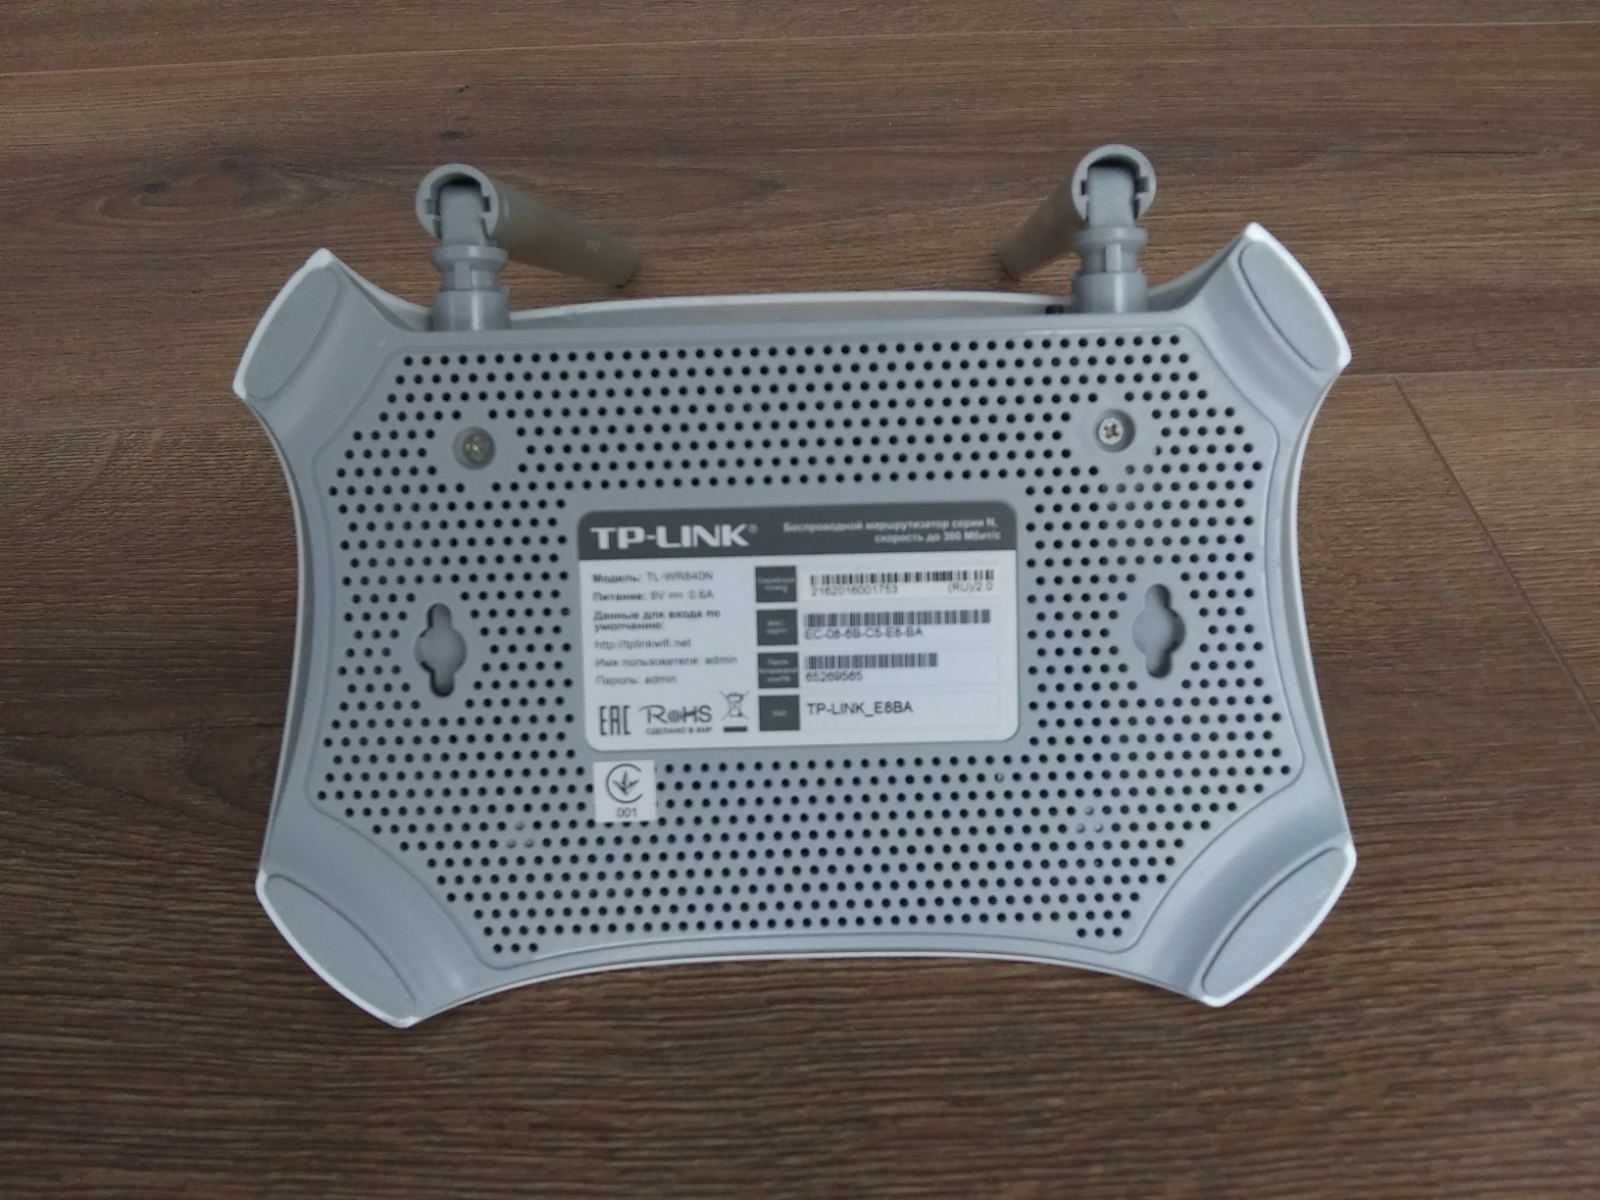 Вай-фай (WiFi) роутер Маршрутизатор TP-LINK TL-WR840N